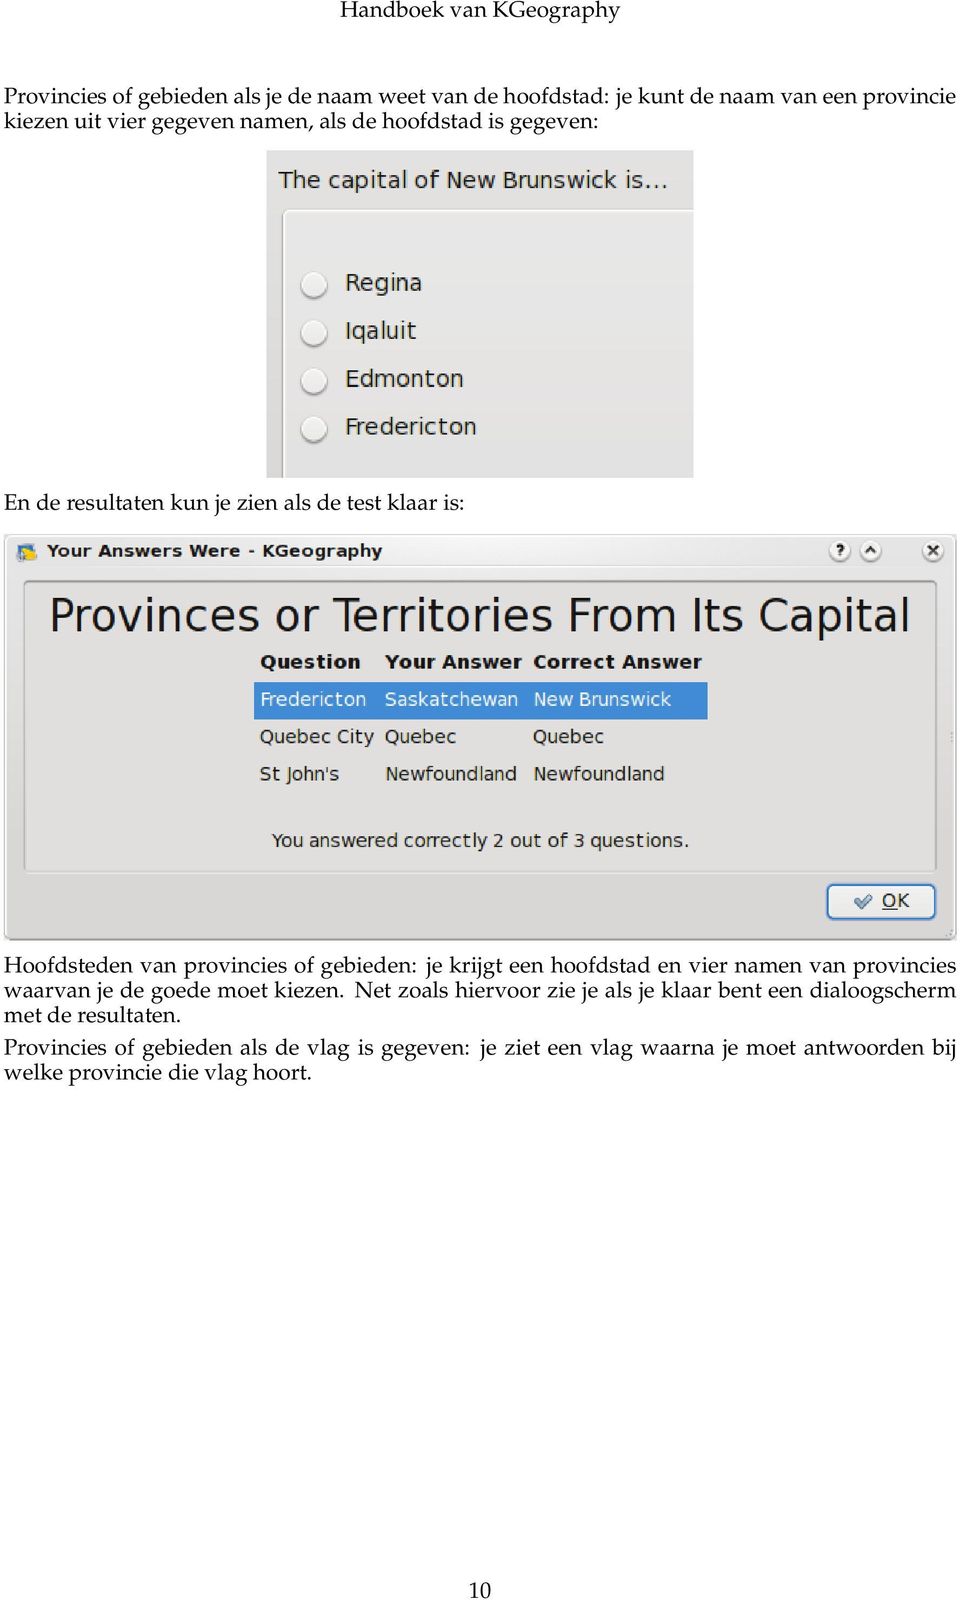 hoofdstad en vier namen van provincies waarvan je de goede moet kiezen.